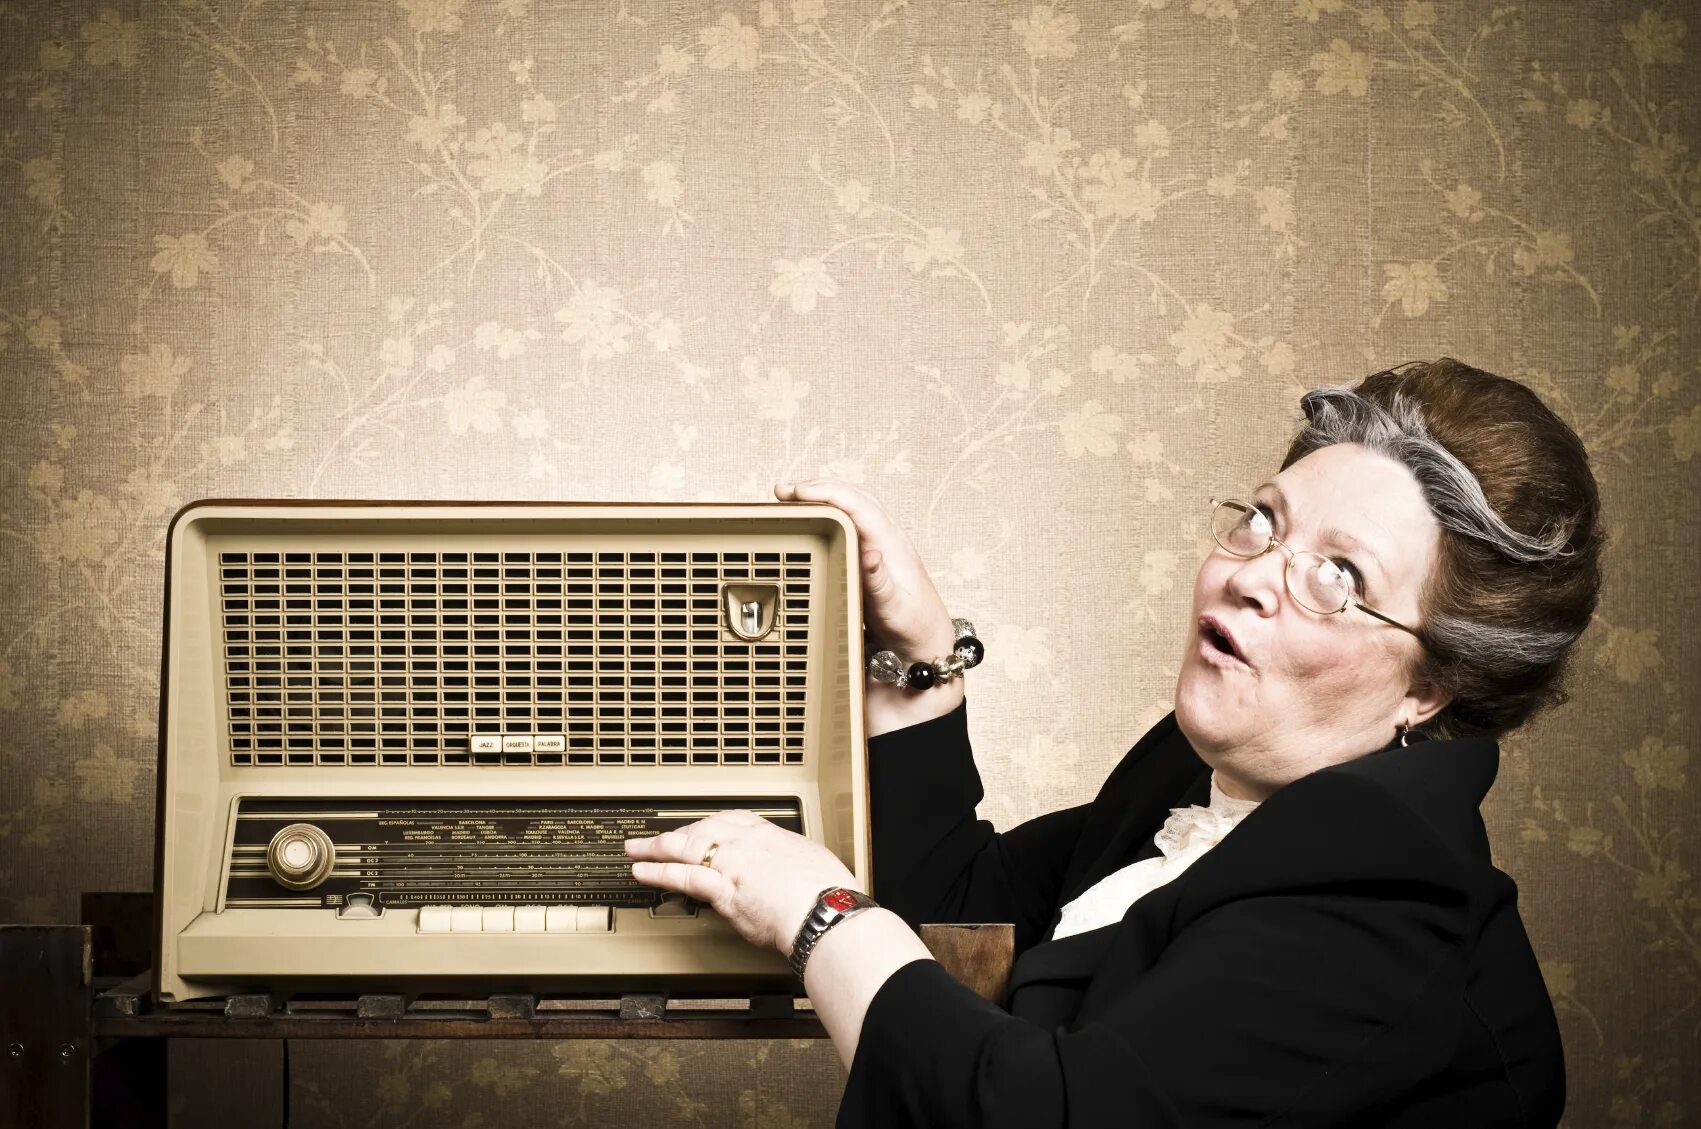 Музыка послушать радио. Старый радиоприемник. Радио фото. Человек с радиоприемником. Реклама радиоприемника.